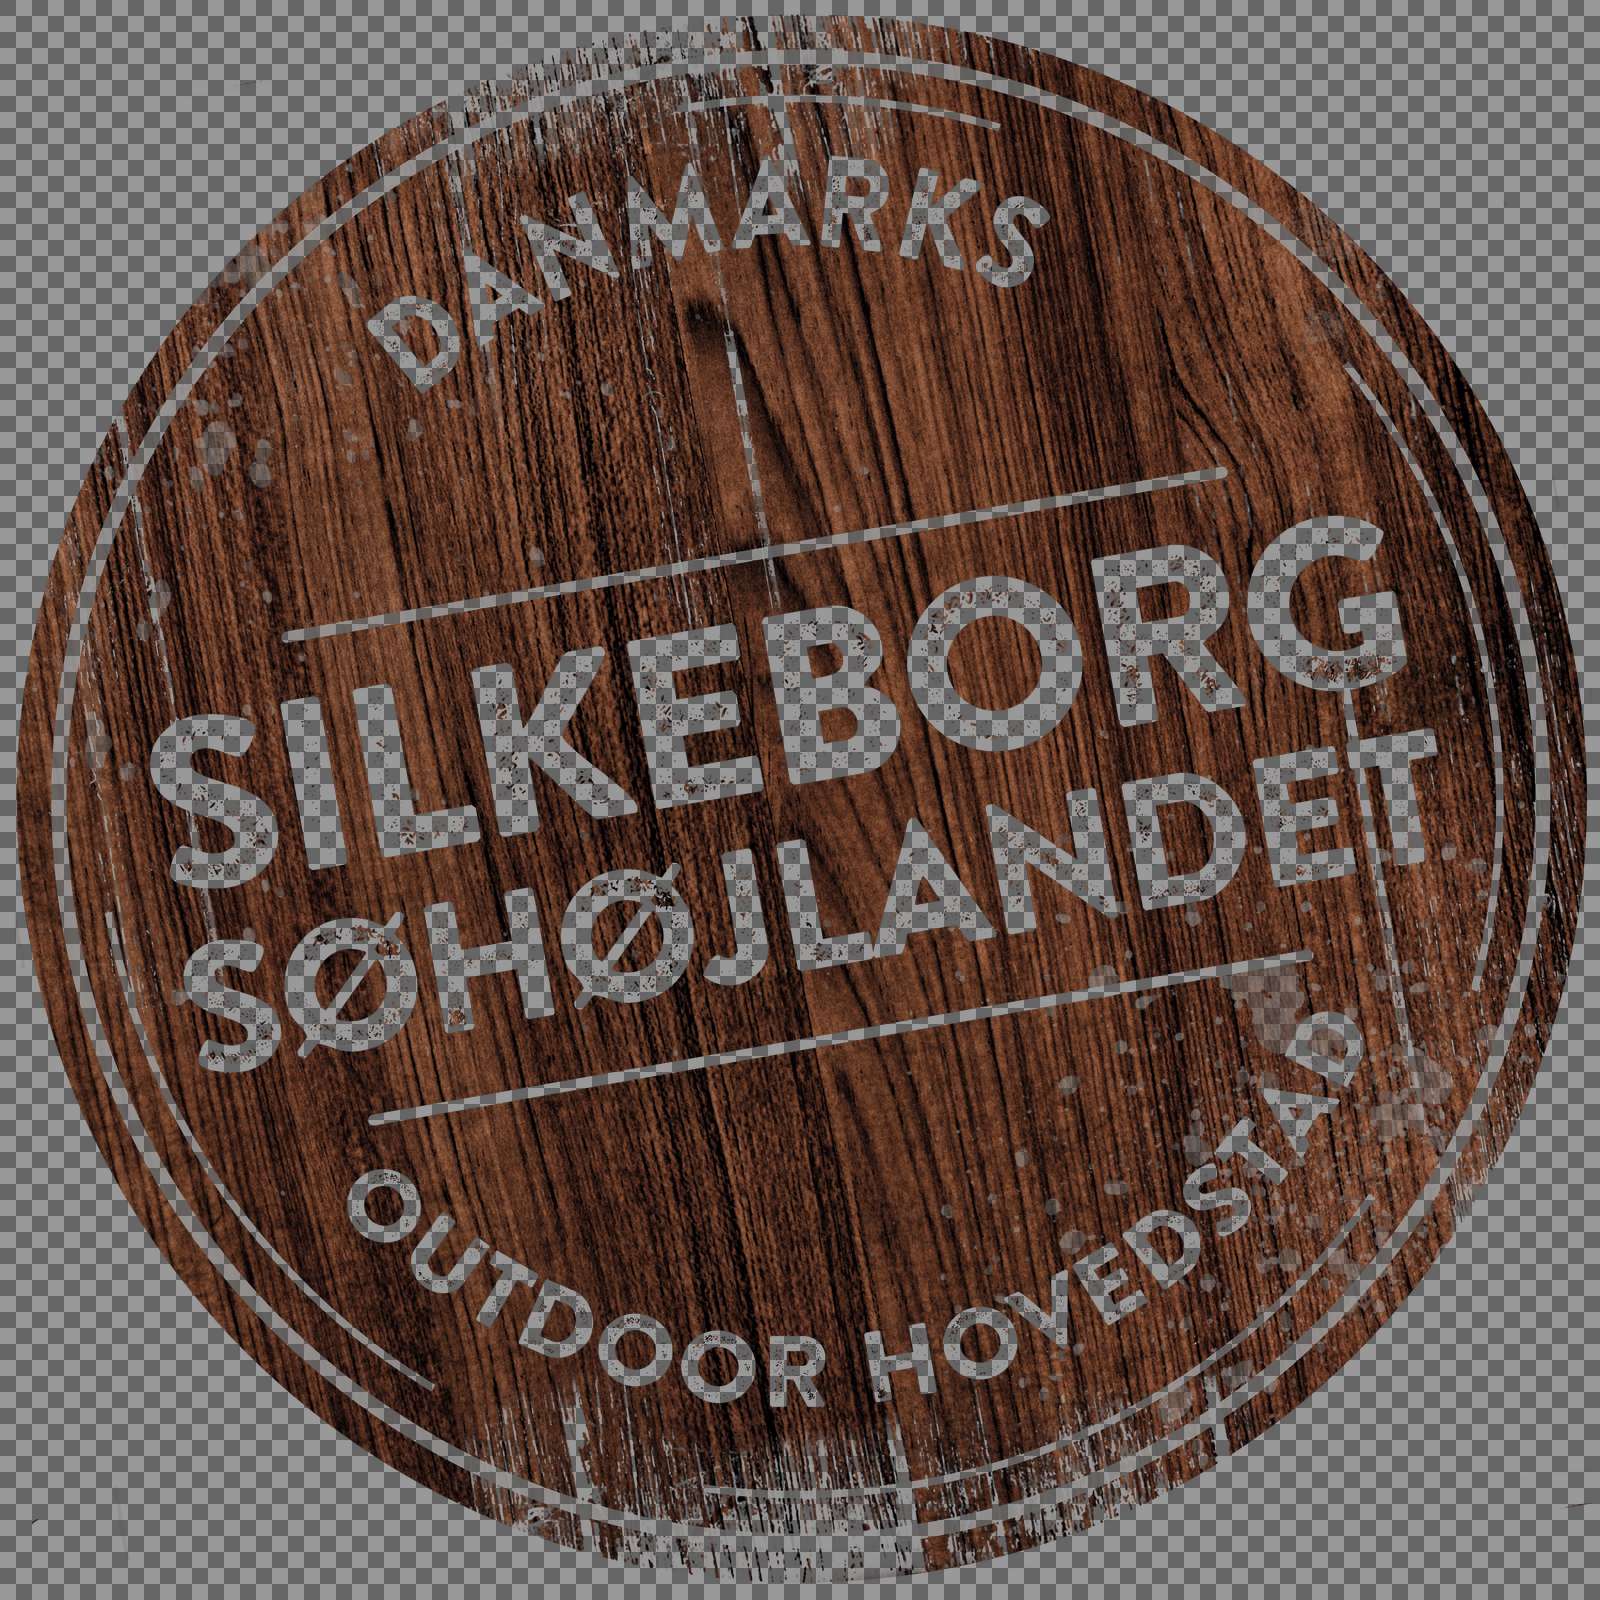 Silkeborg Søhøjlandet DK WOOD